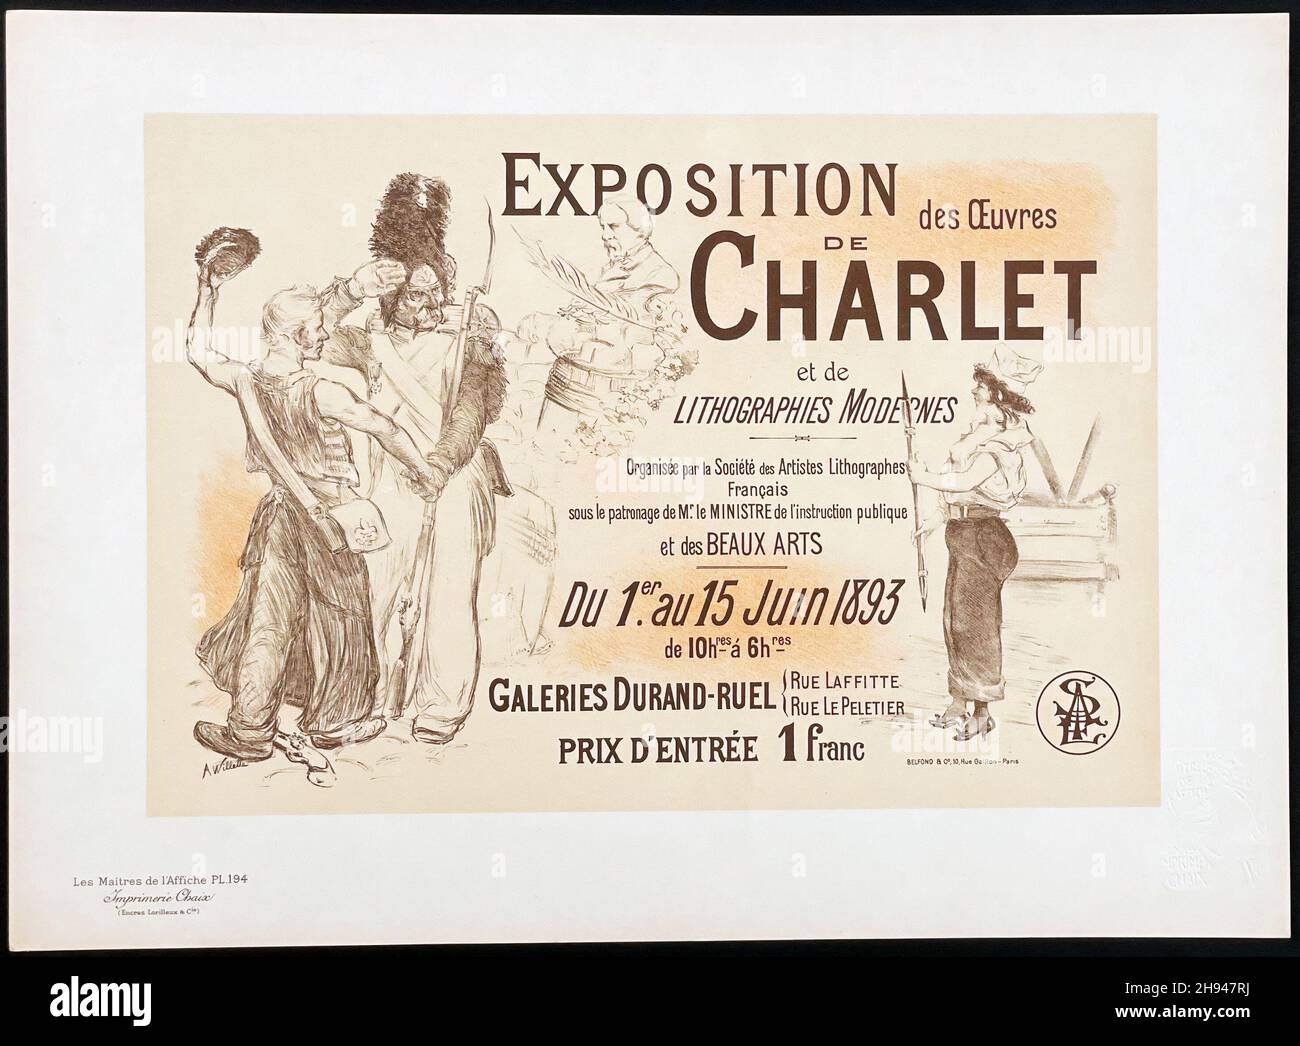 Exposition De Charlet Les Maitres De l'Affiche Plate #194, Artist: Adolphe Willette. 1899. Foto Stock